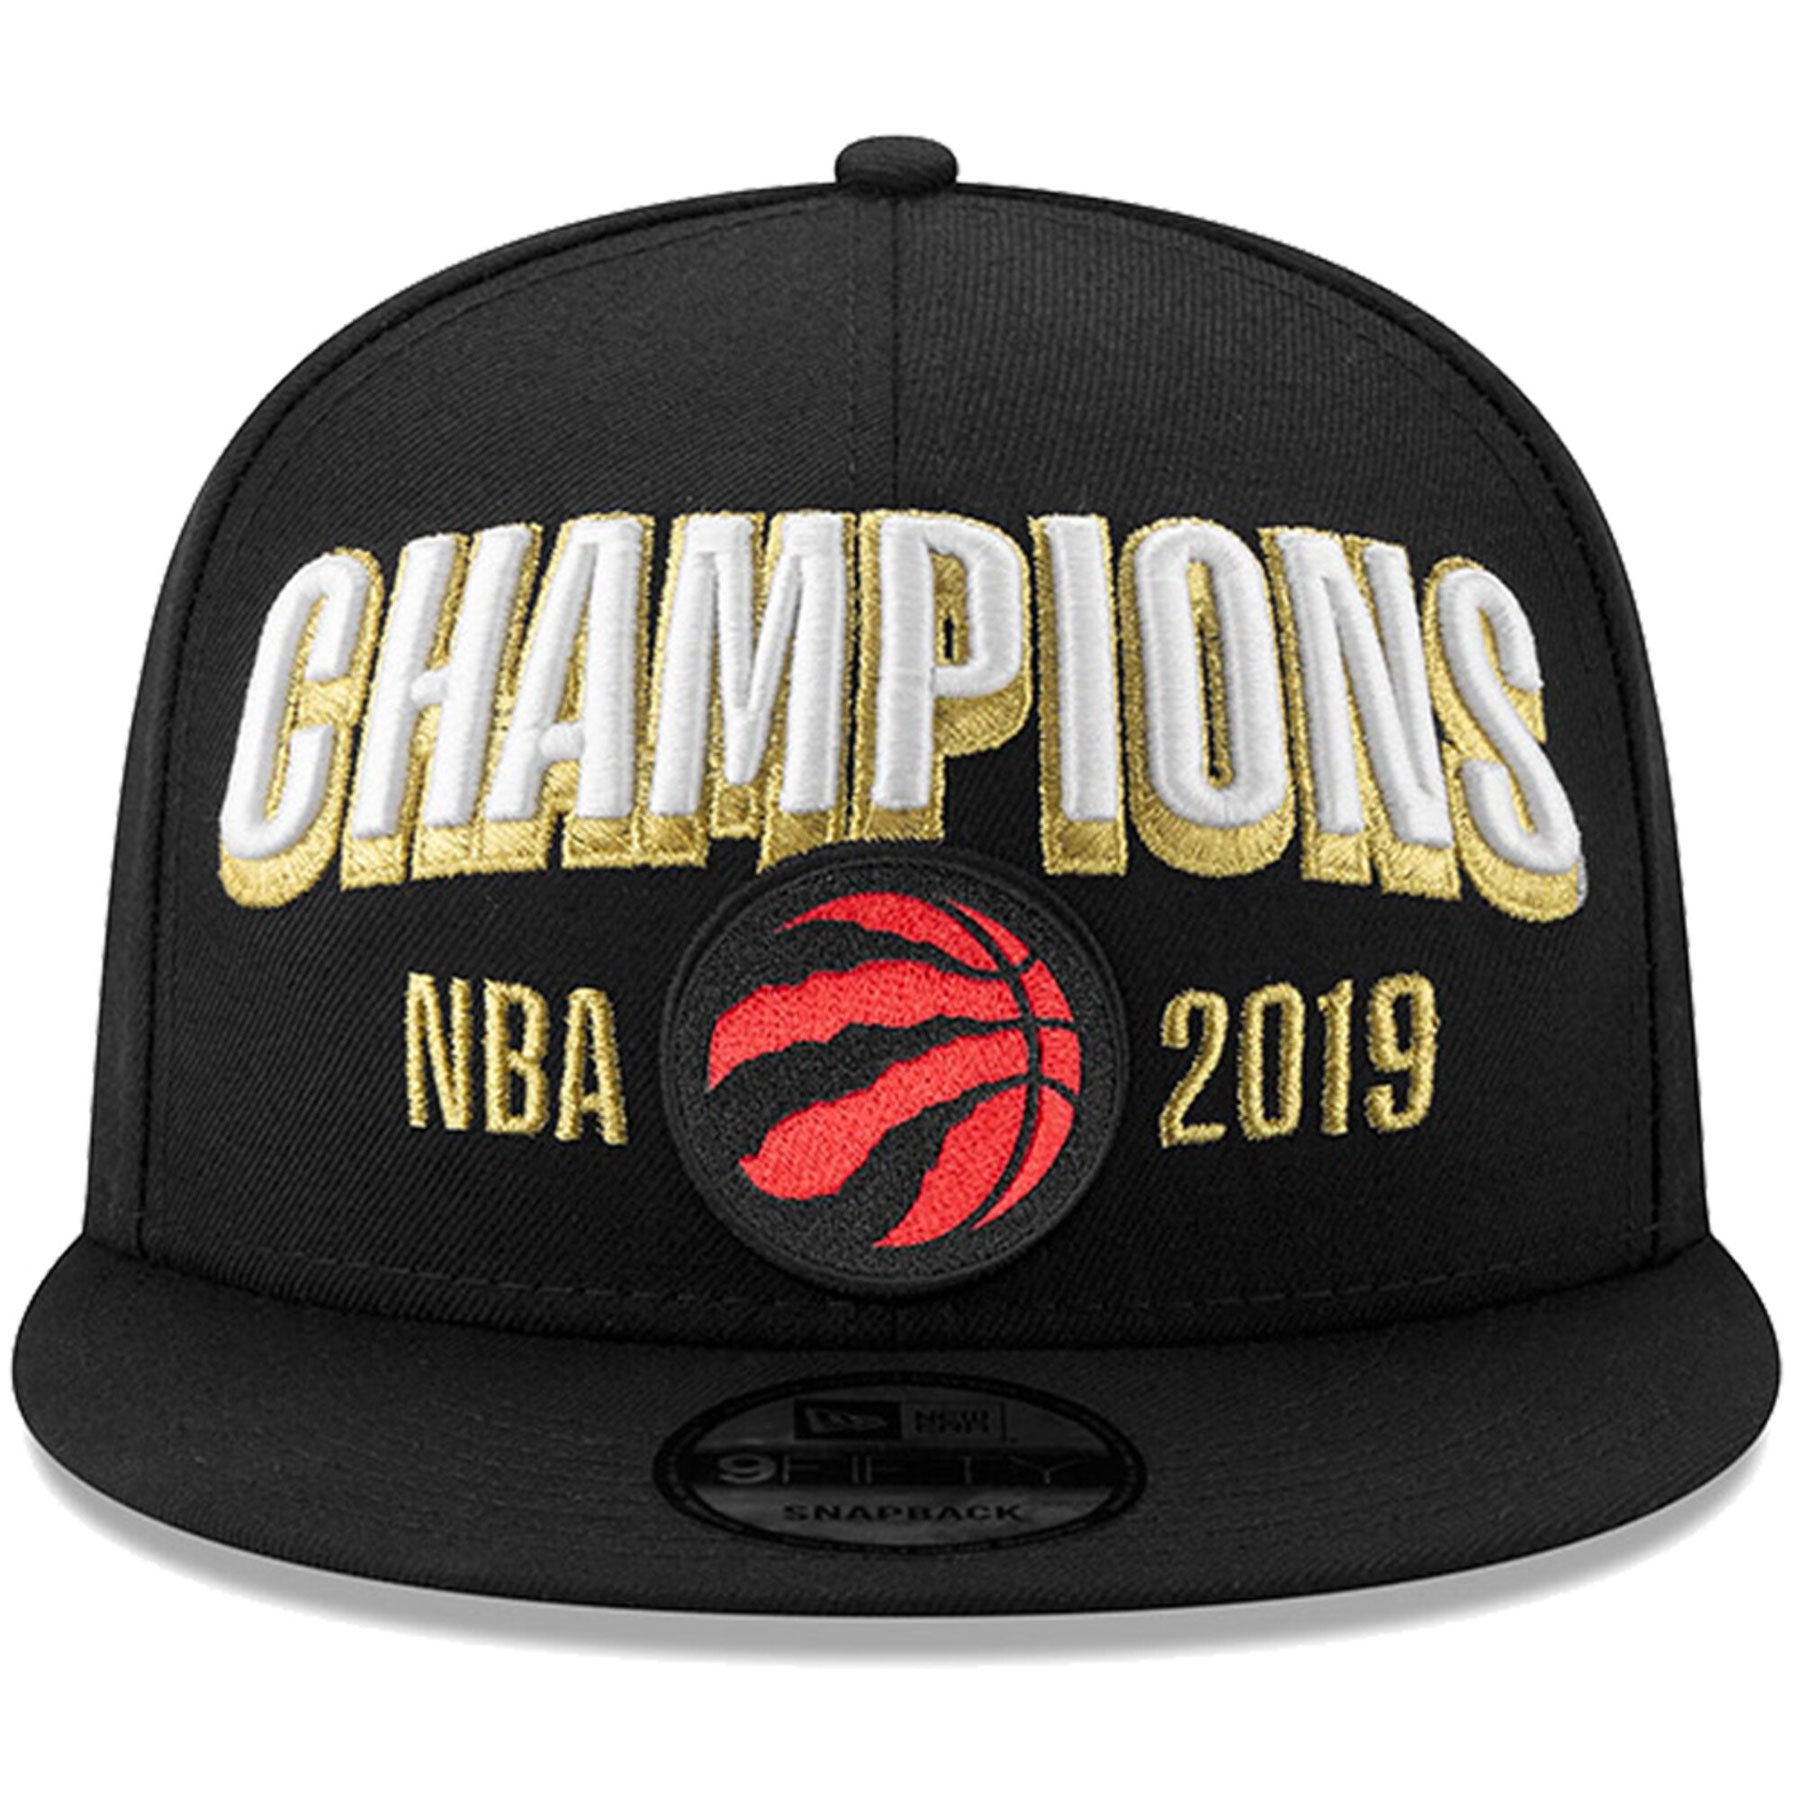 New Era Black 2019 NBA Finals 